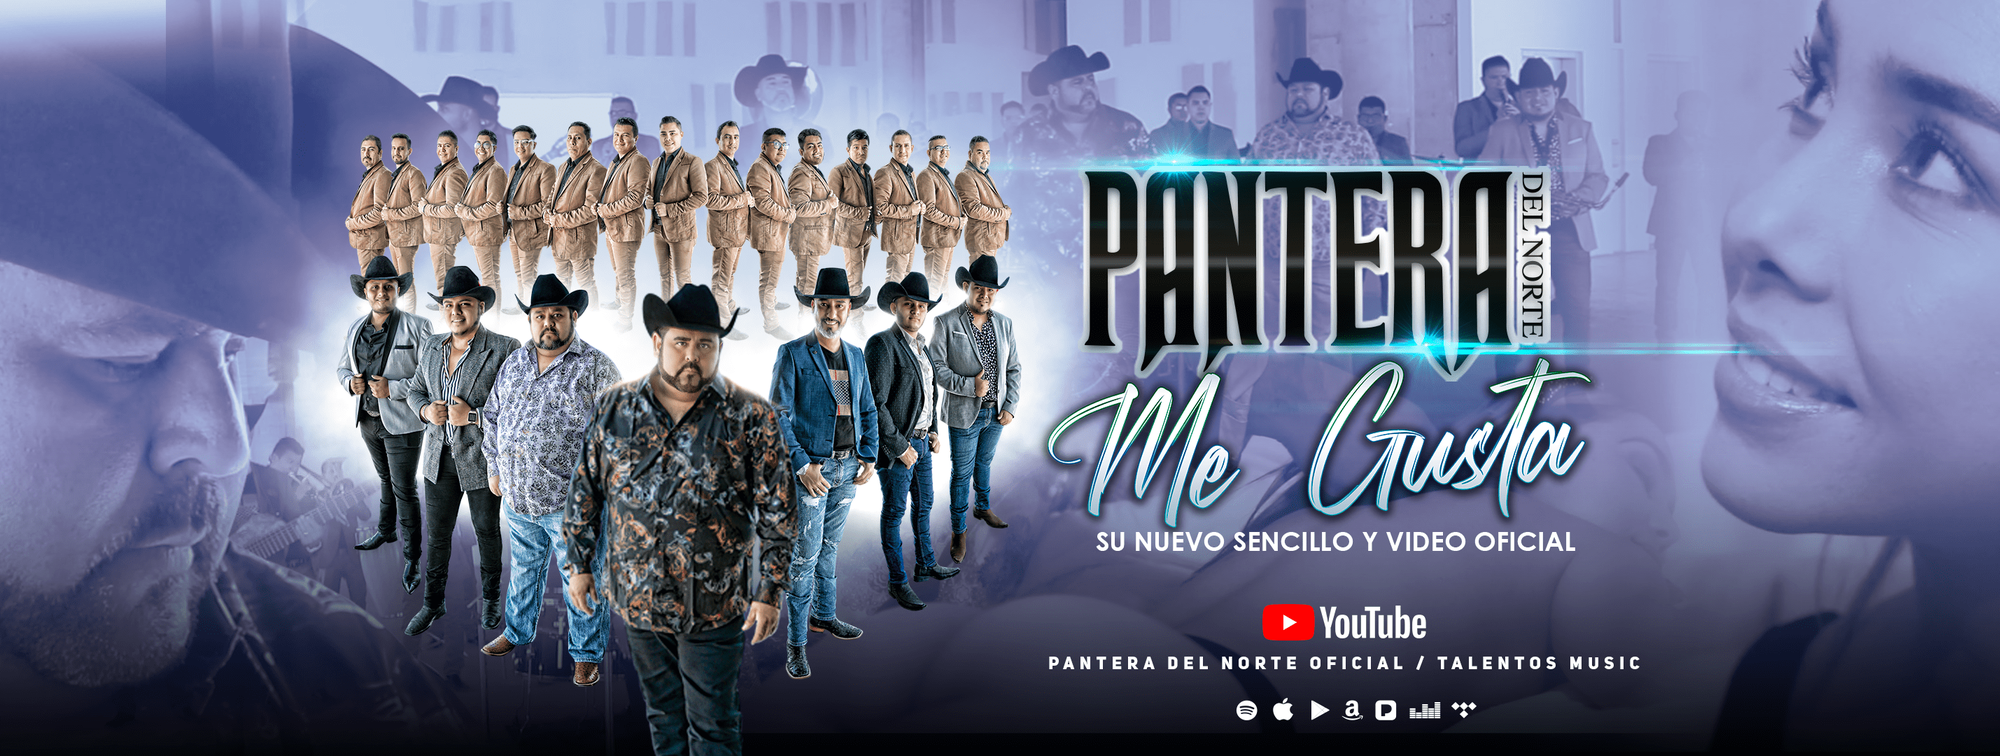 Mira aquí el nuevo Video Oficial de "Pantera Del Norte - Me Gusta", disponible en Youtube y todas las Plataformas Digitales